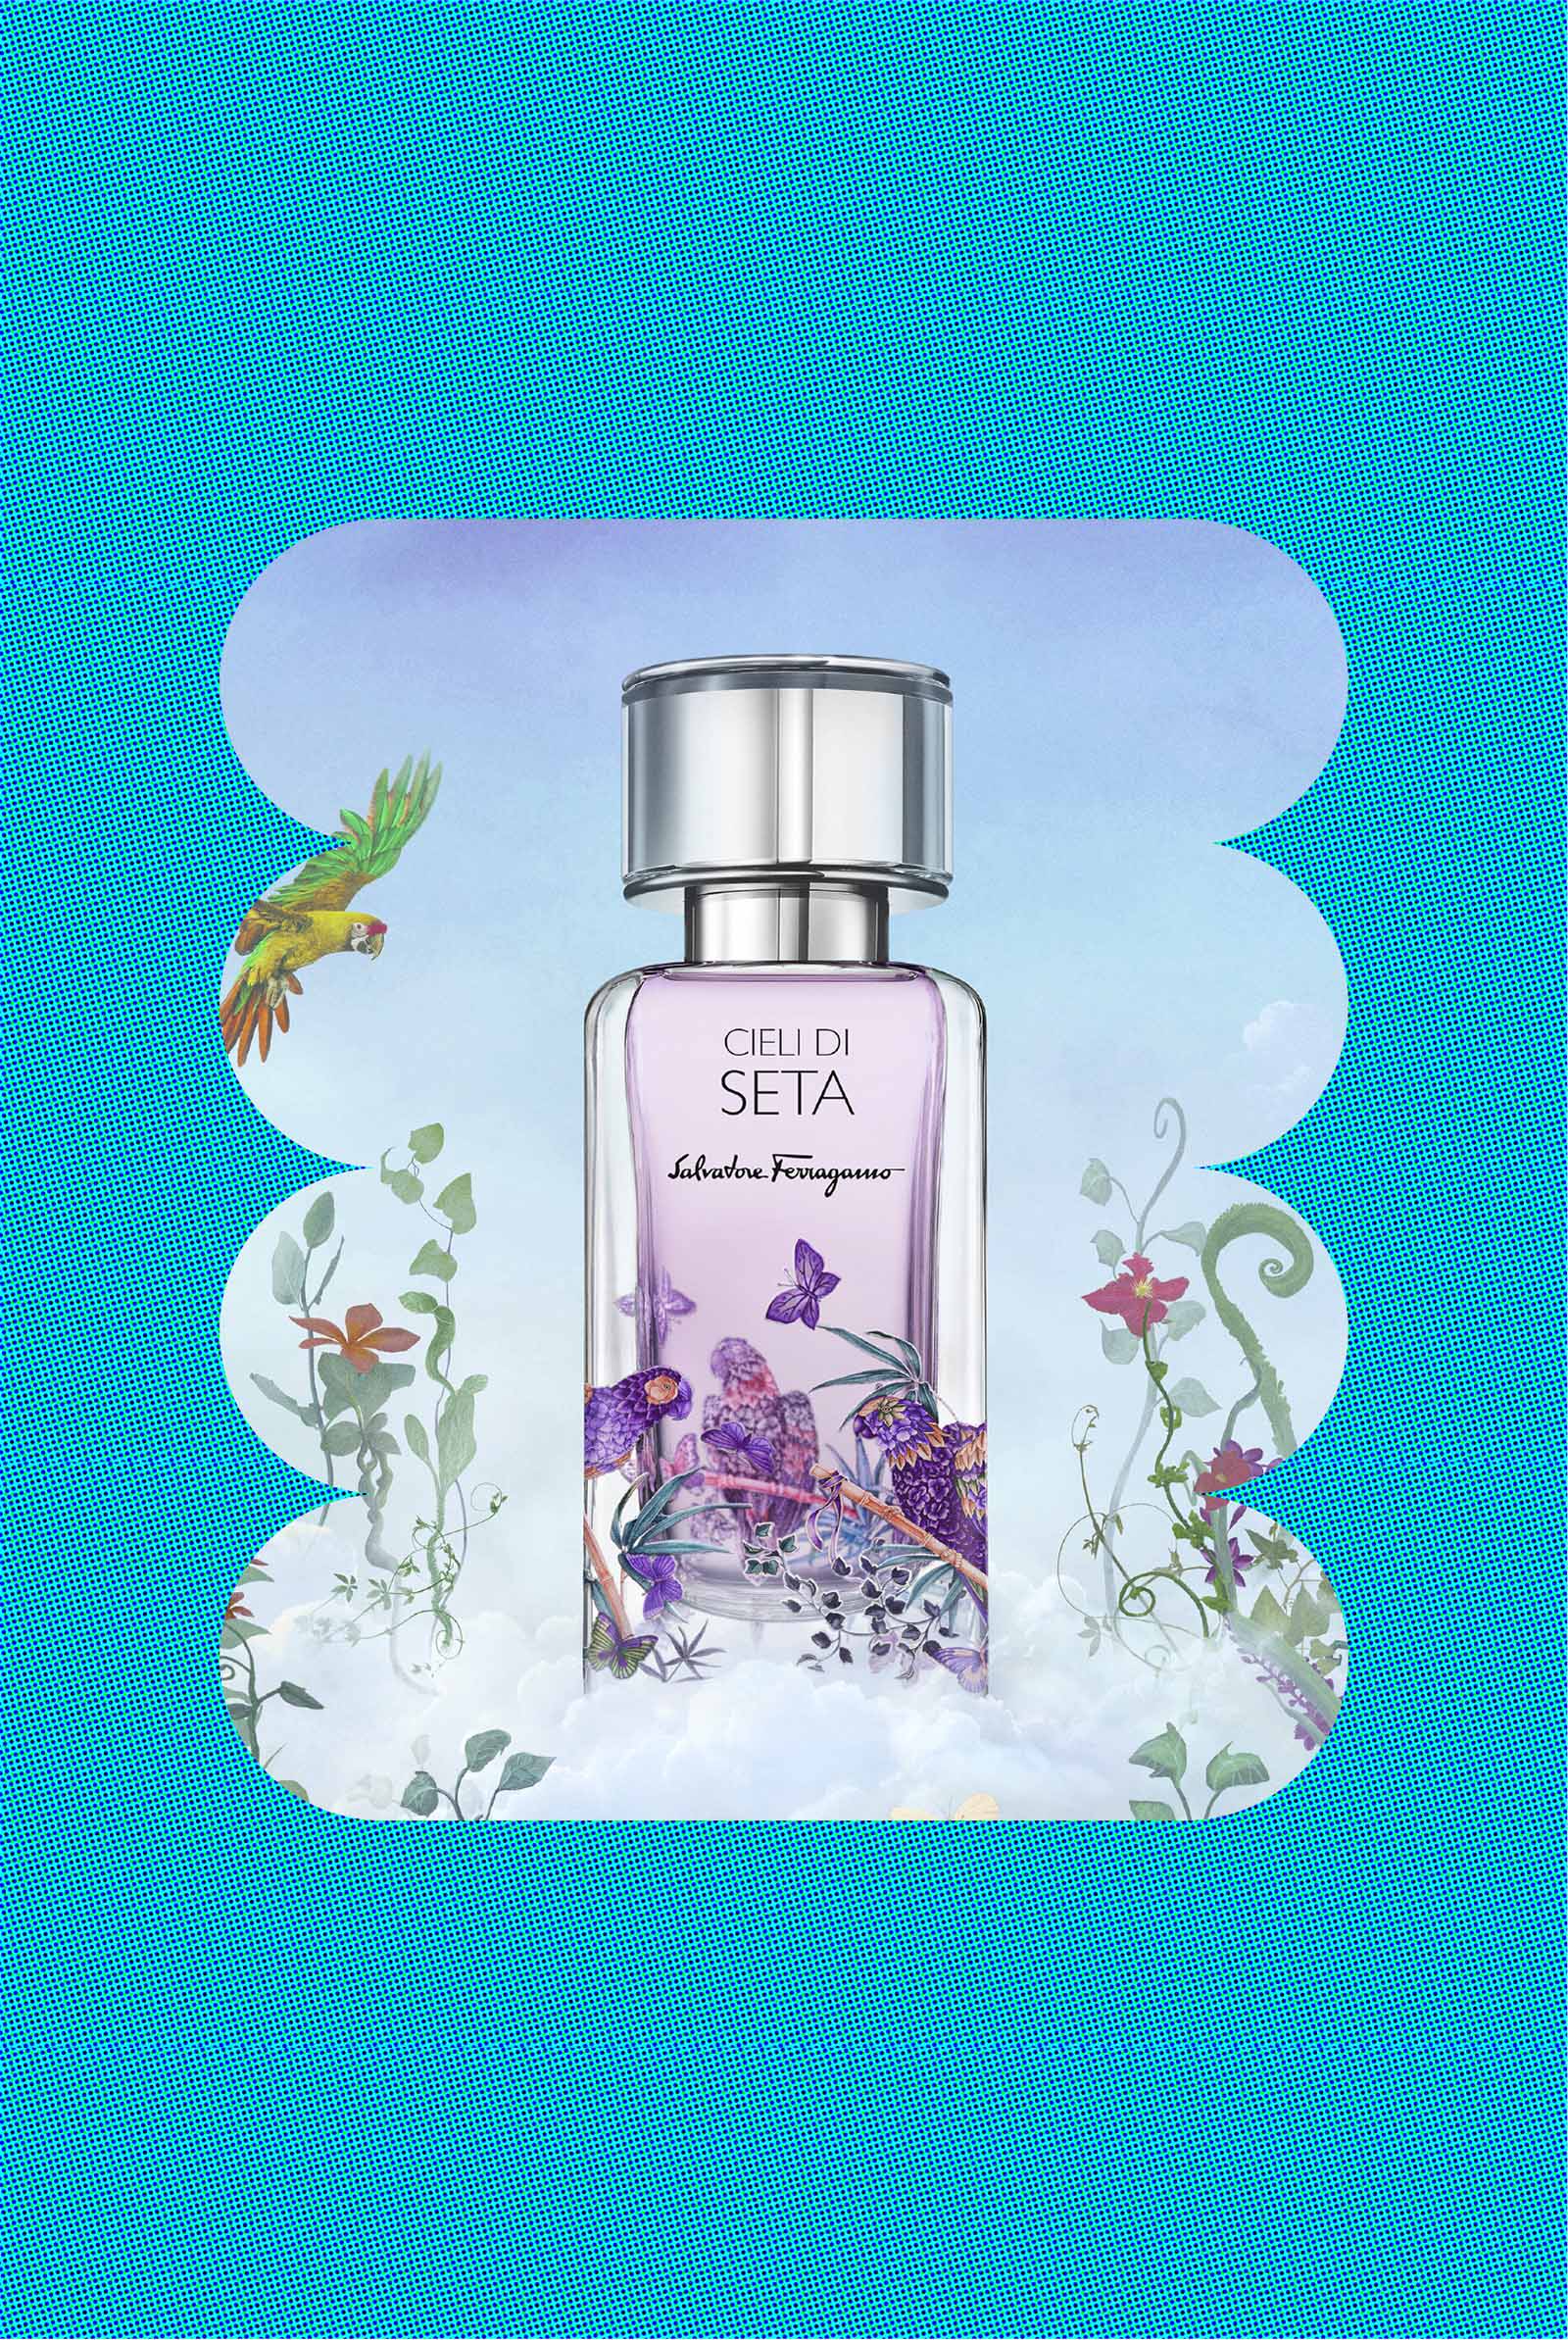 Cieli di Seta by Ferragamo summer scent